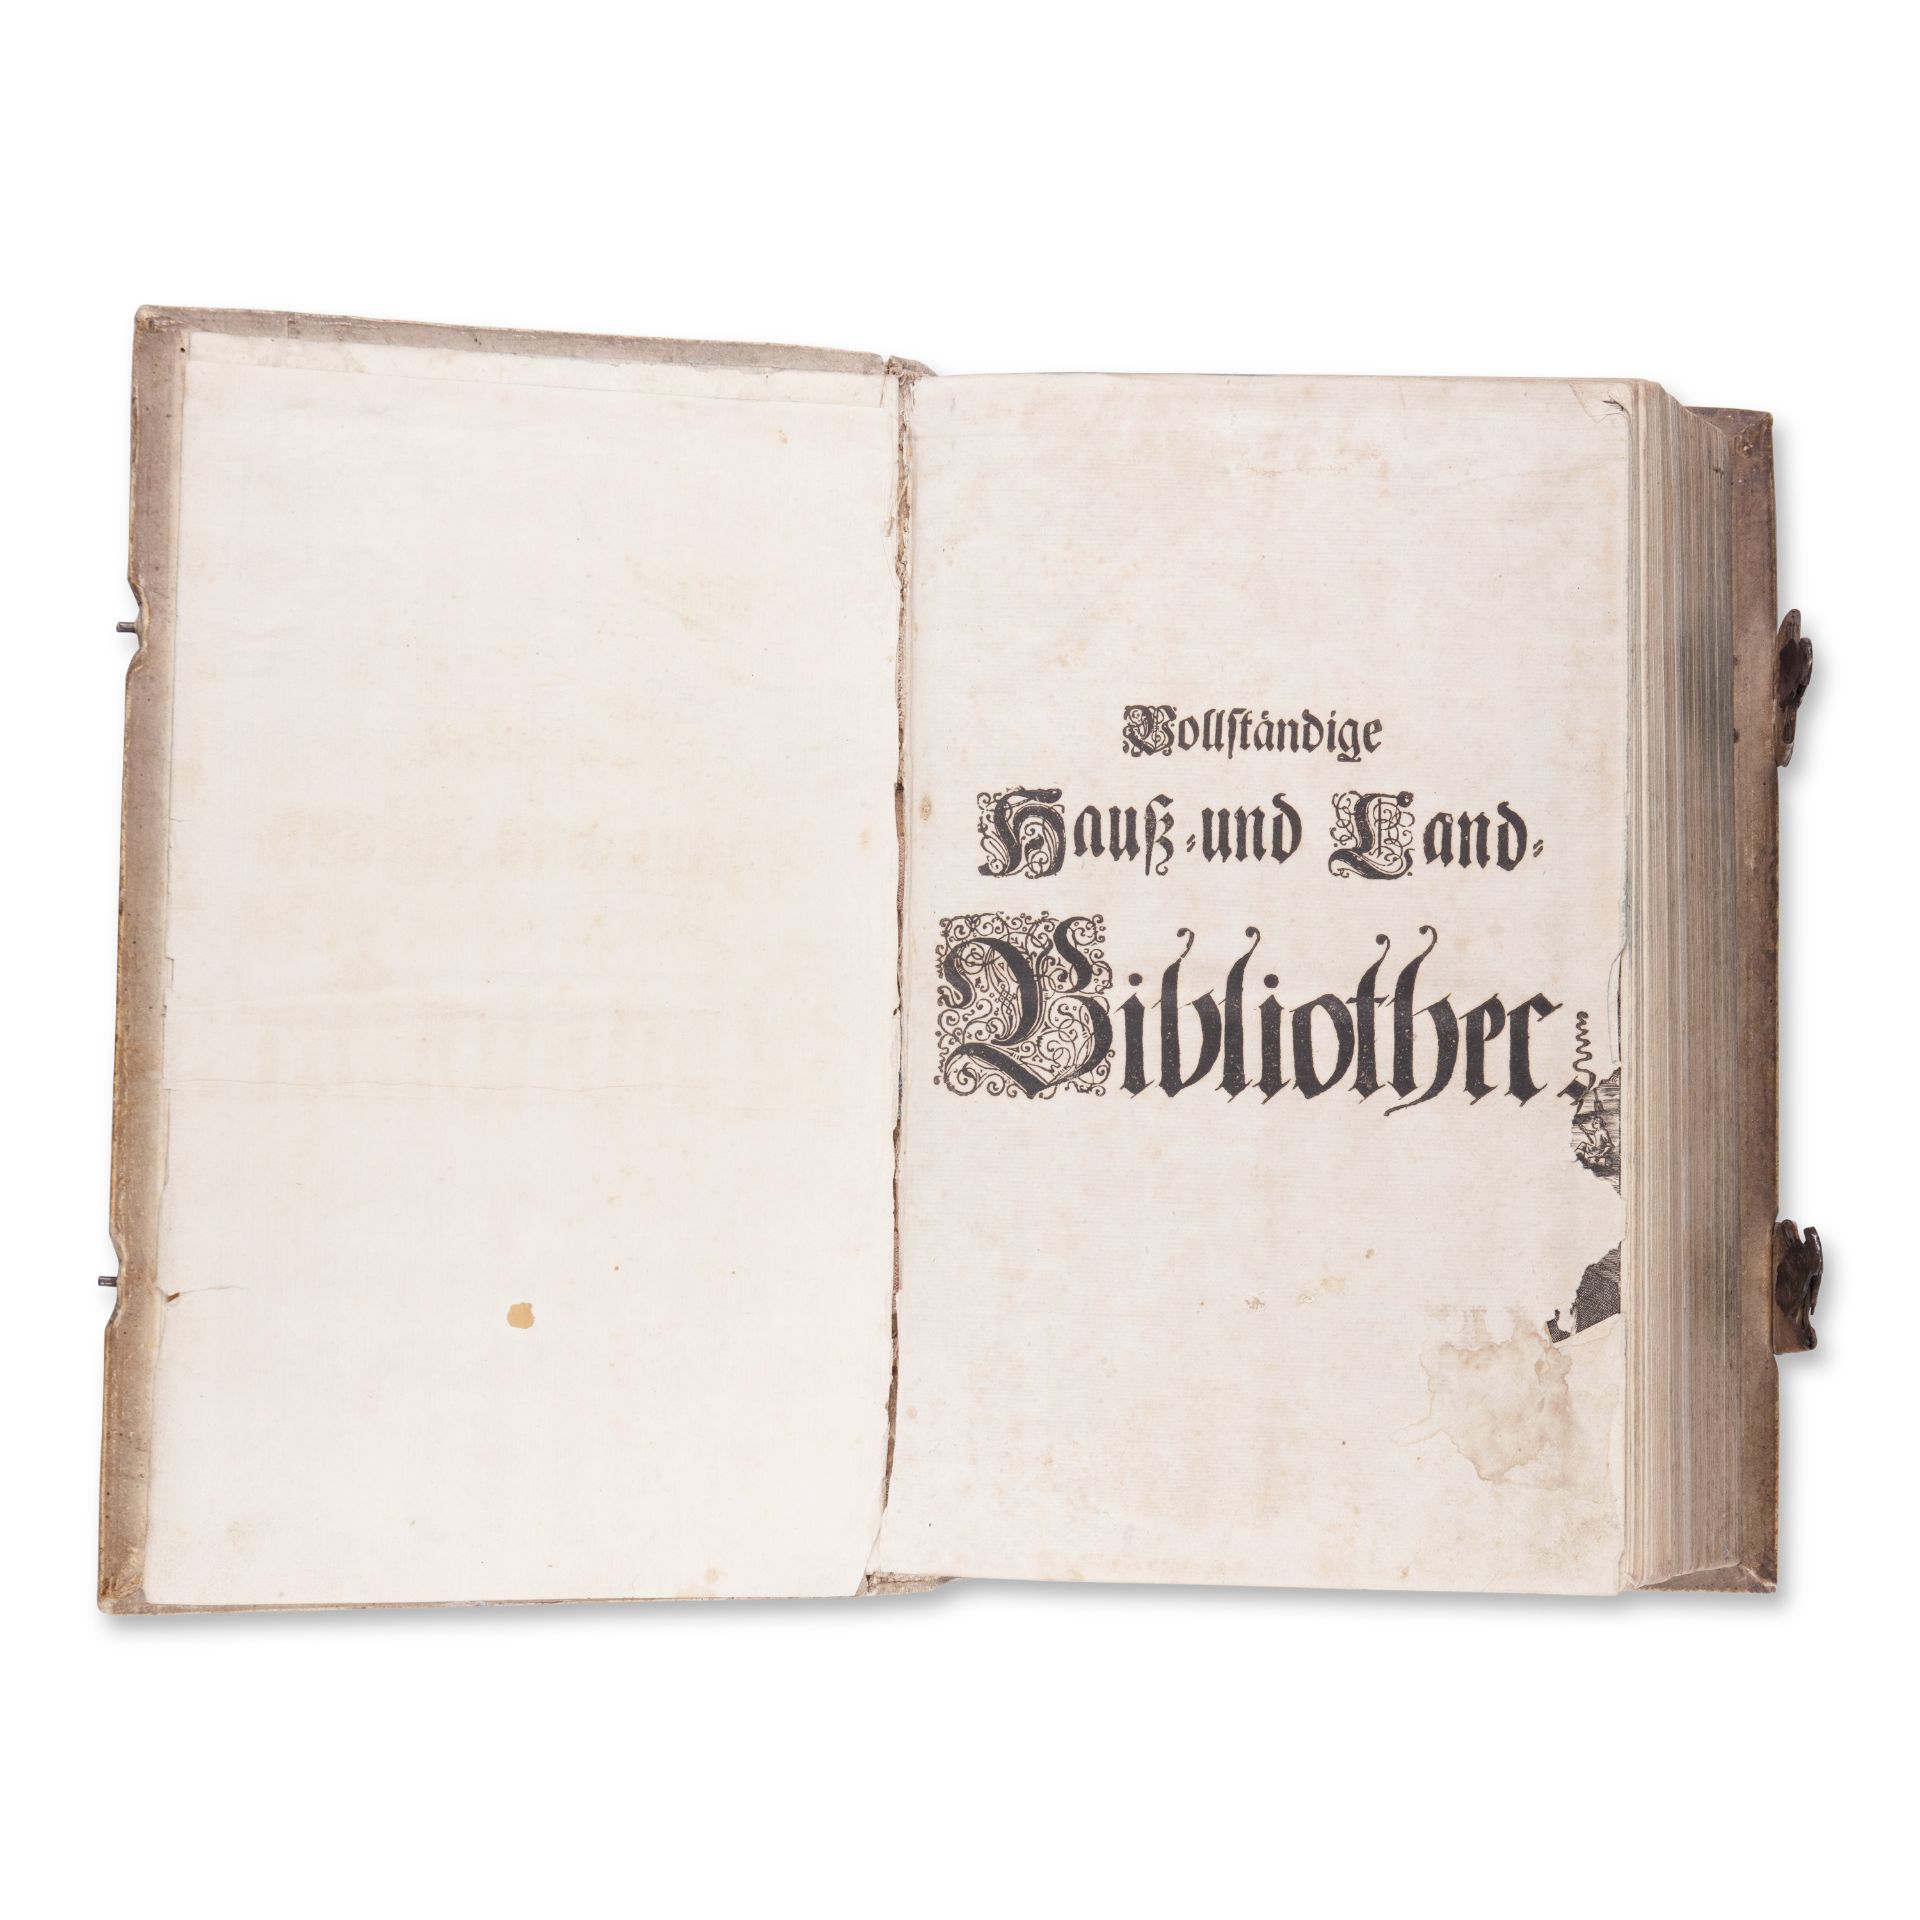 GLOREZ, Andreas (1620-1700): Vollstandige Hauss- und Land-Bibliothec - Bild 3 aus 5